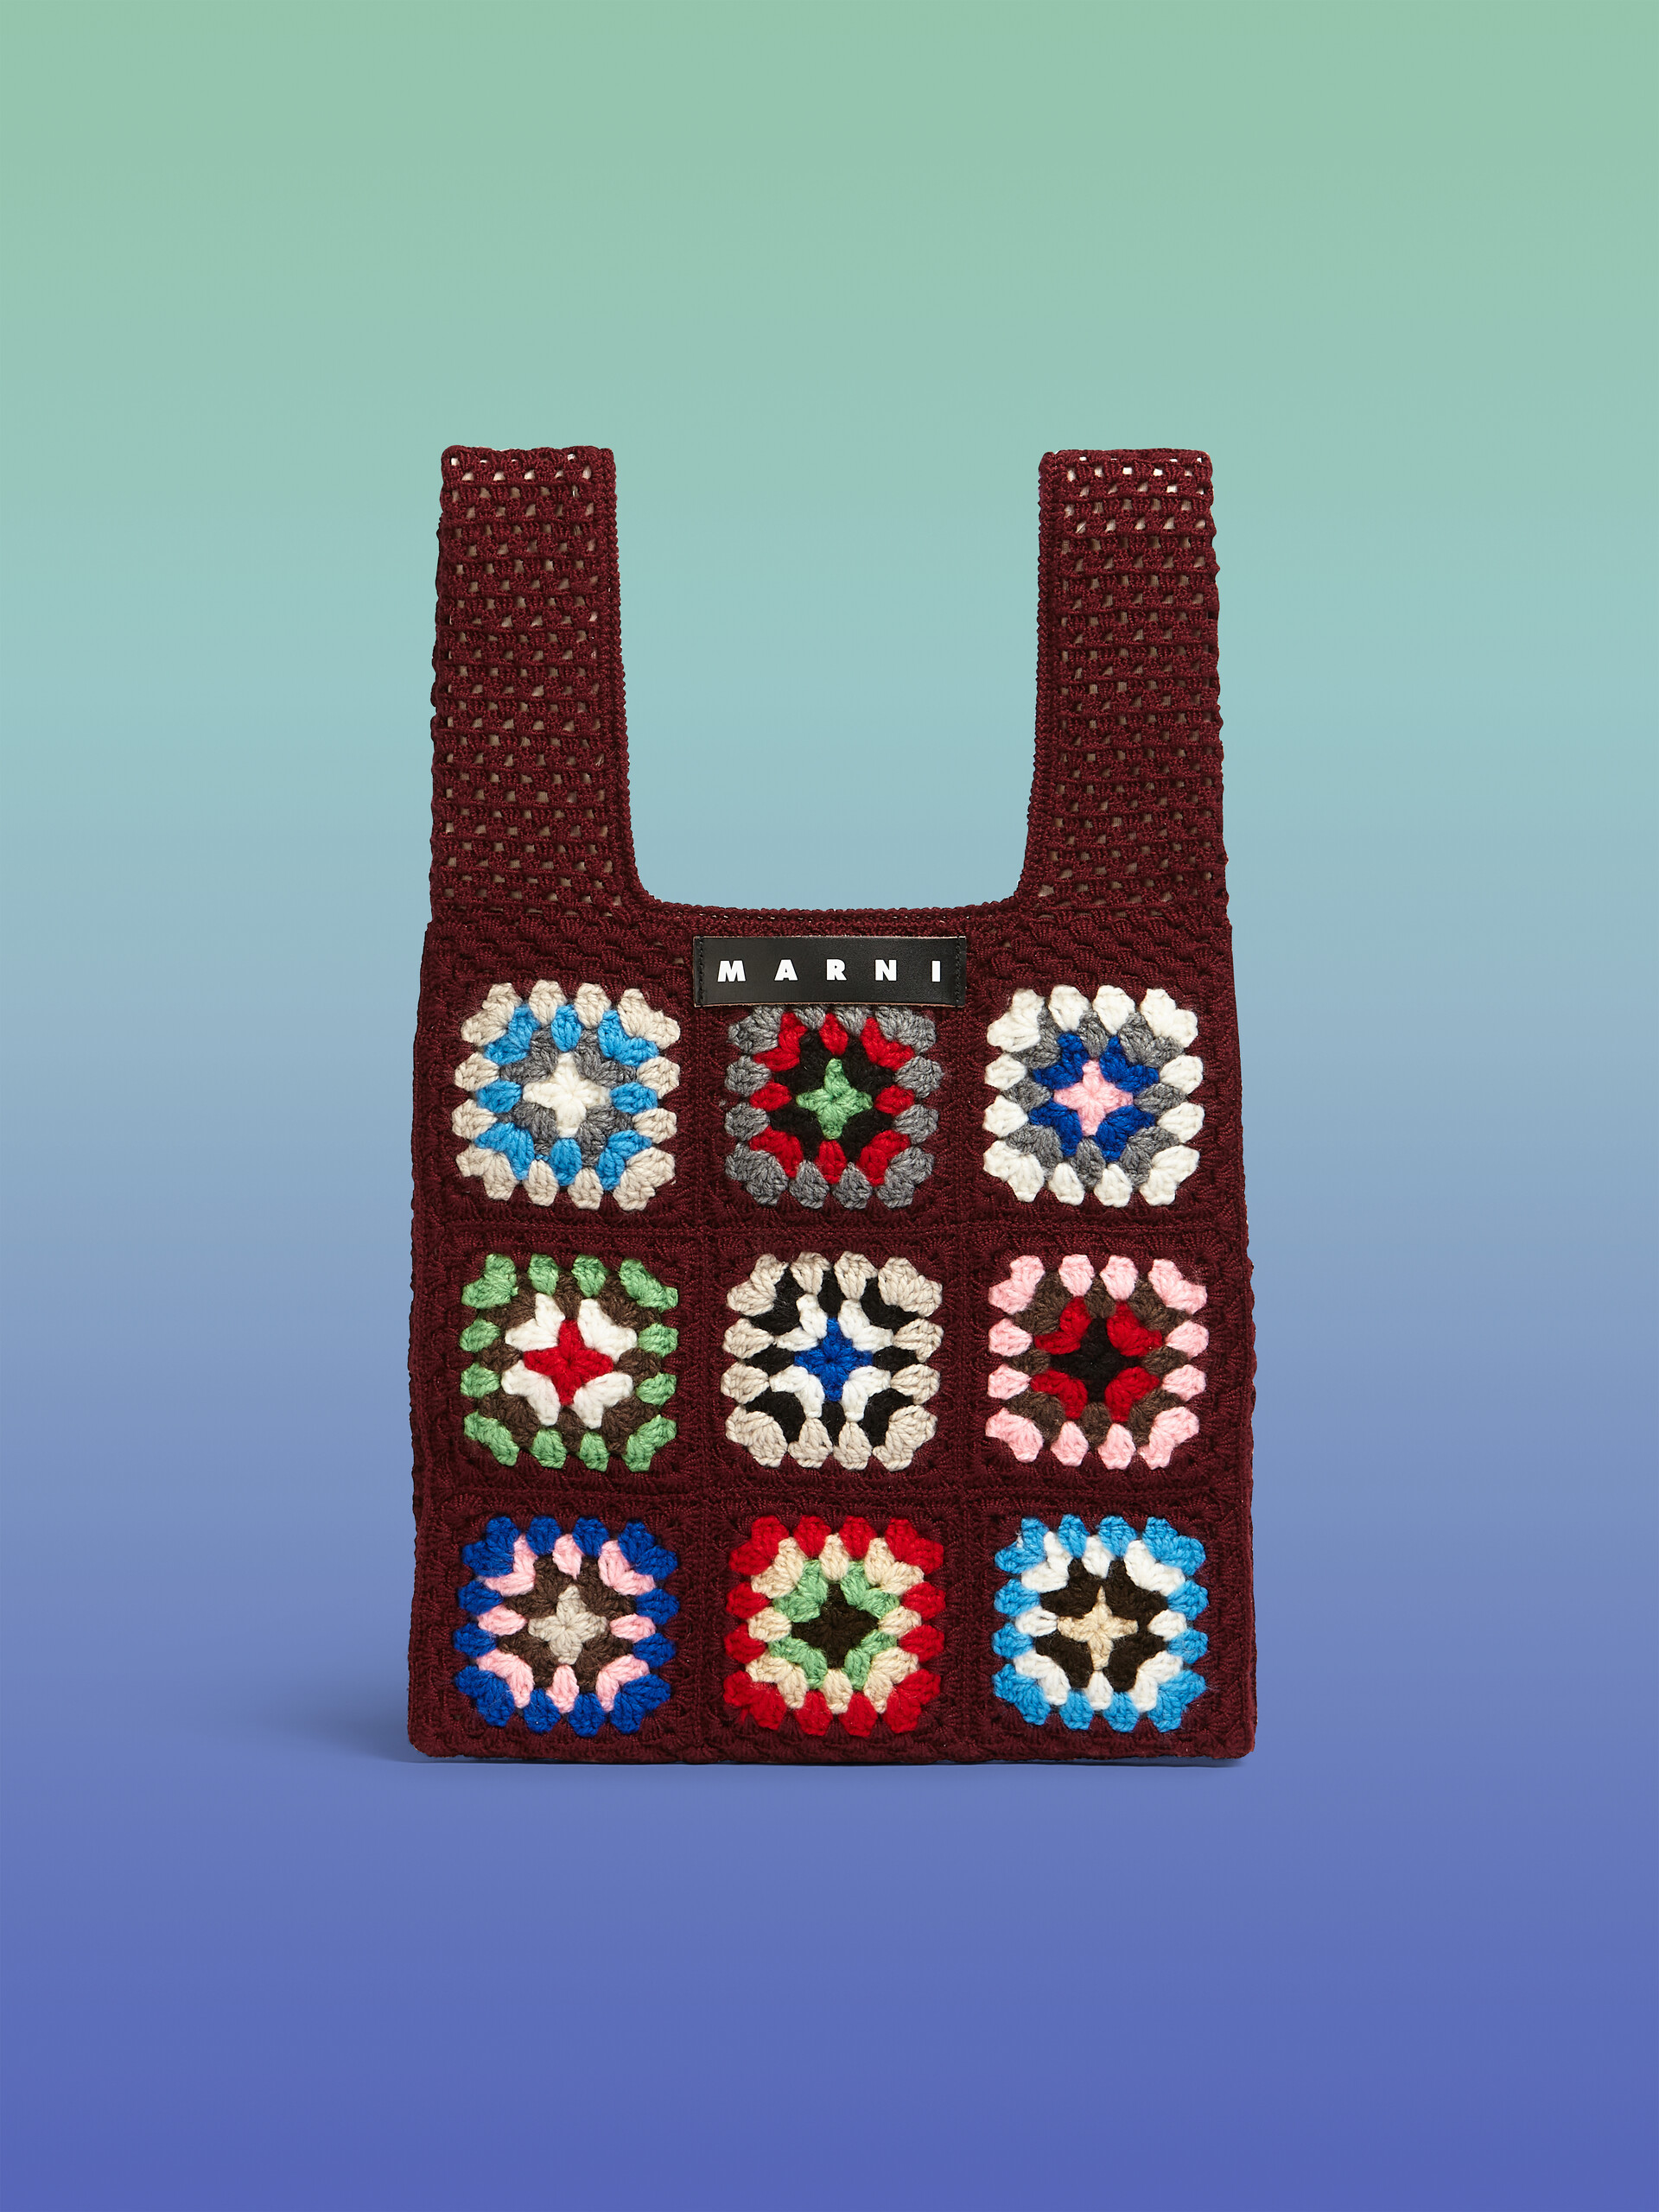 MARNI MARKET FISH bag in brown crochet - Bags - Image 1